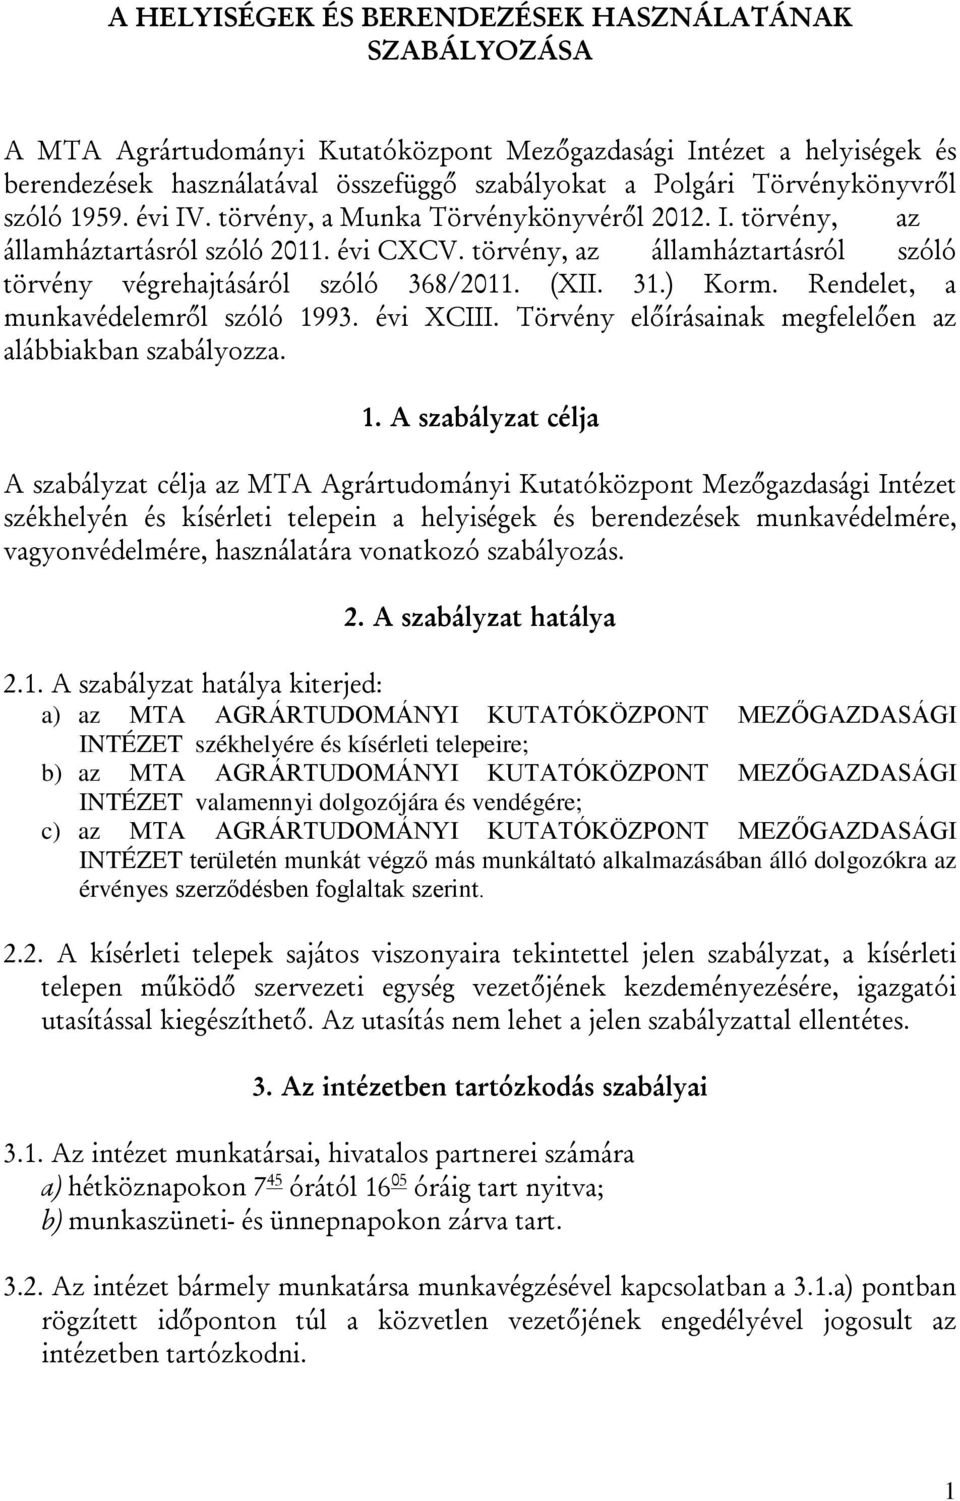 törvény, az államháztartásról szóló törvény végrehajtásáról szóló 368/2011. (XII. 31.) Korm. Rendelet, a munkavédelemről szóló 1993. évi XCIII.